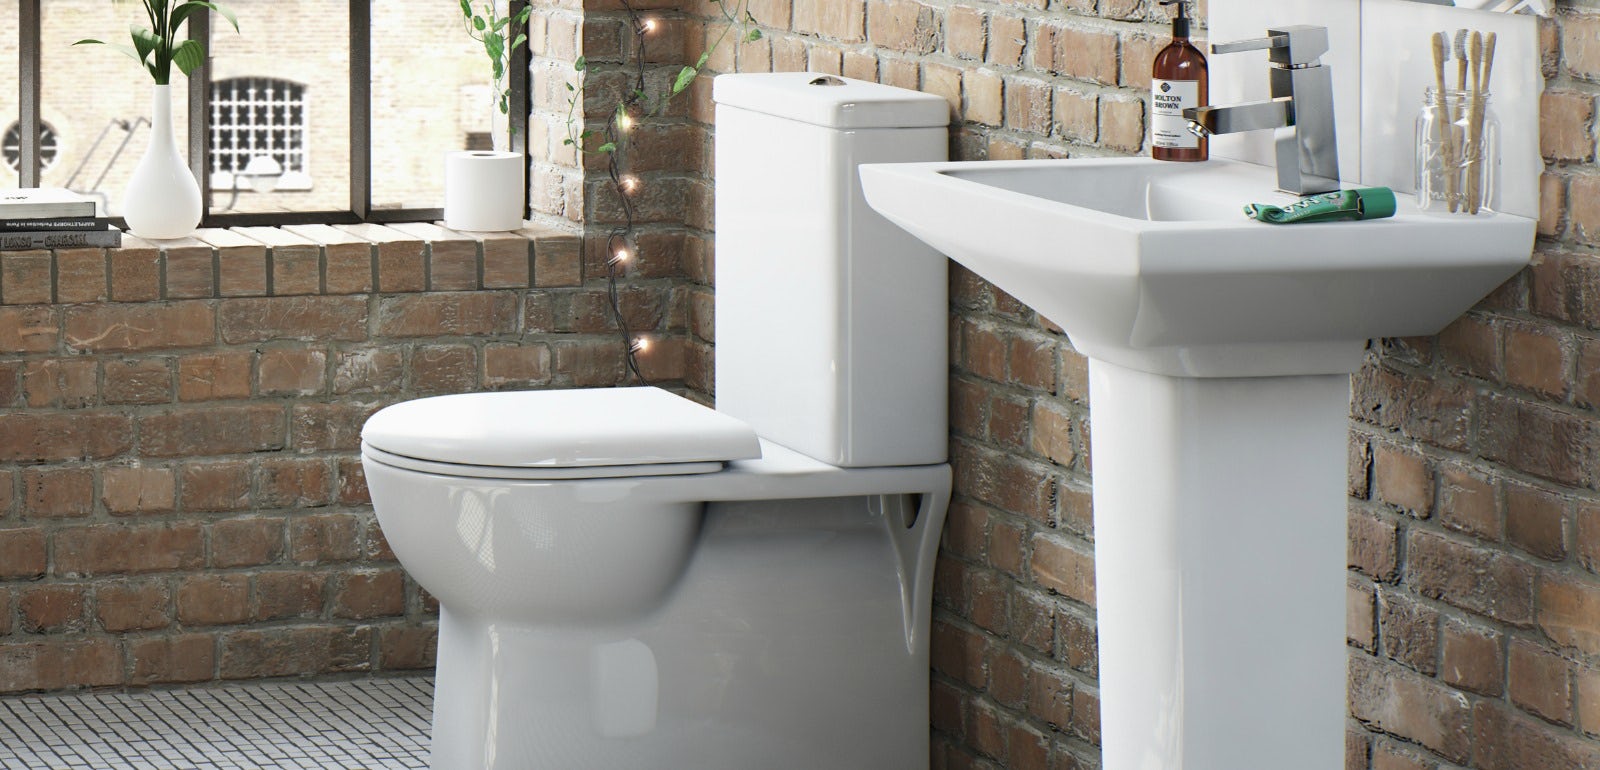 Bathroom Design Quiz - Bathroom Design Ideas Diy : You'll get that with ...